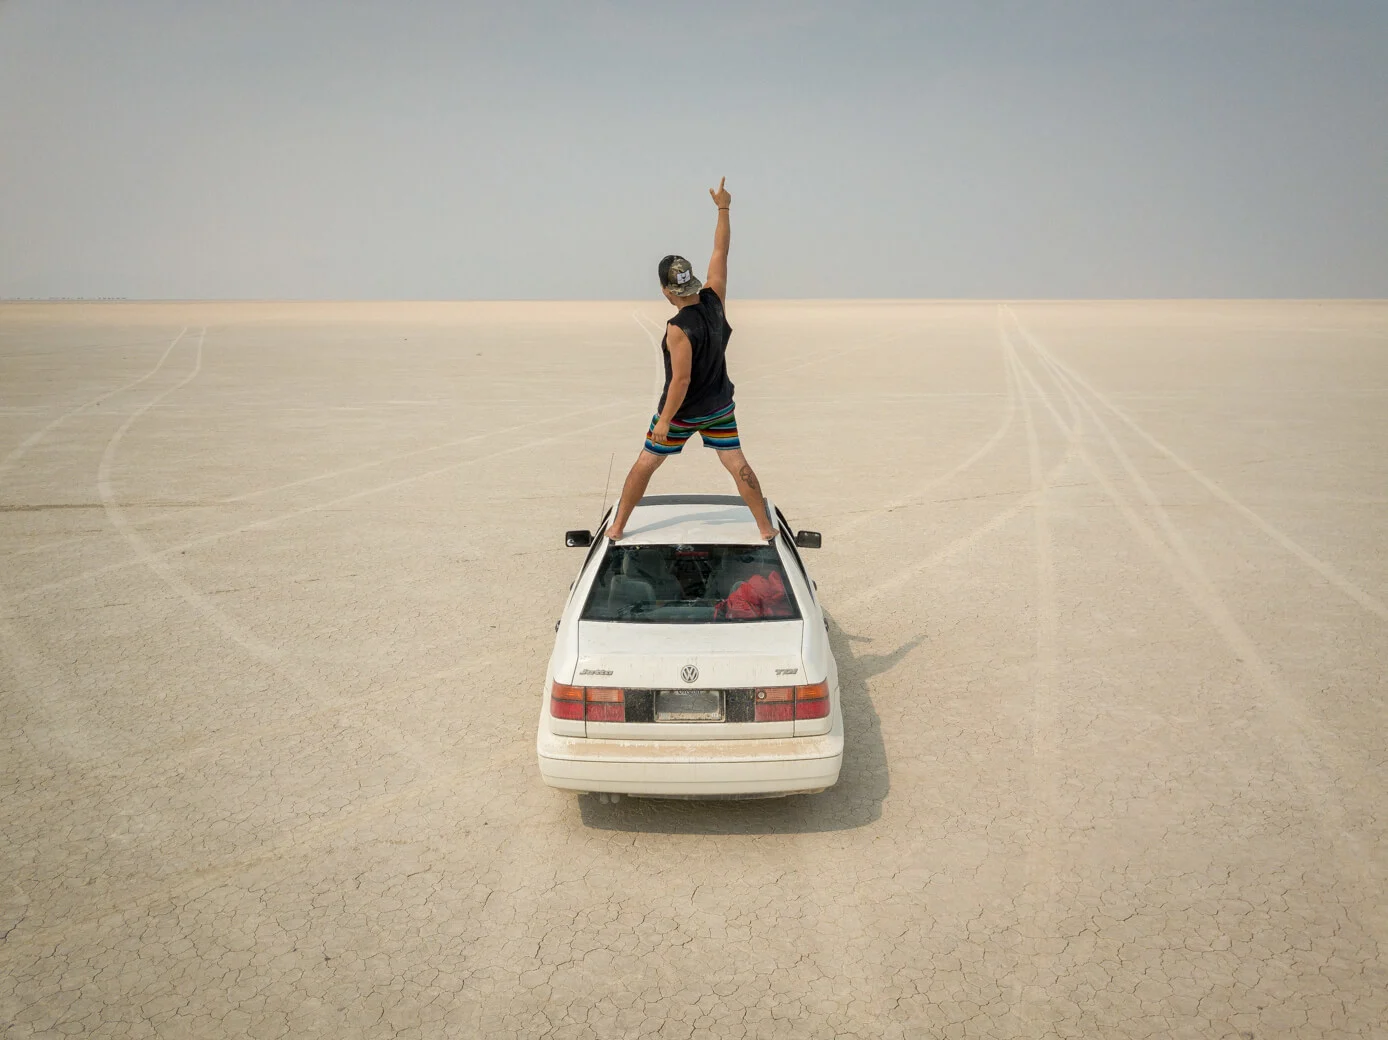 Man standing on car in Alvord Desert